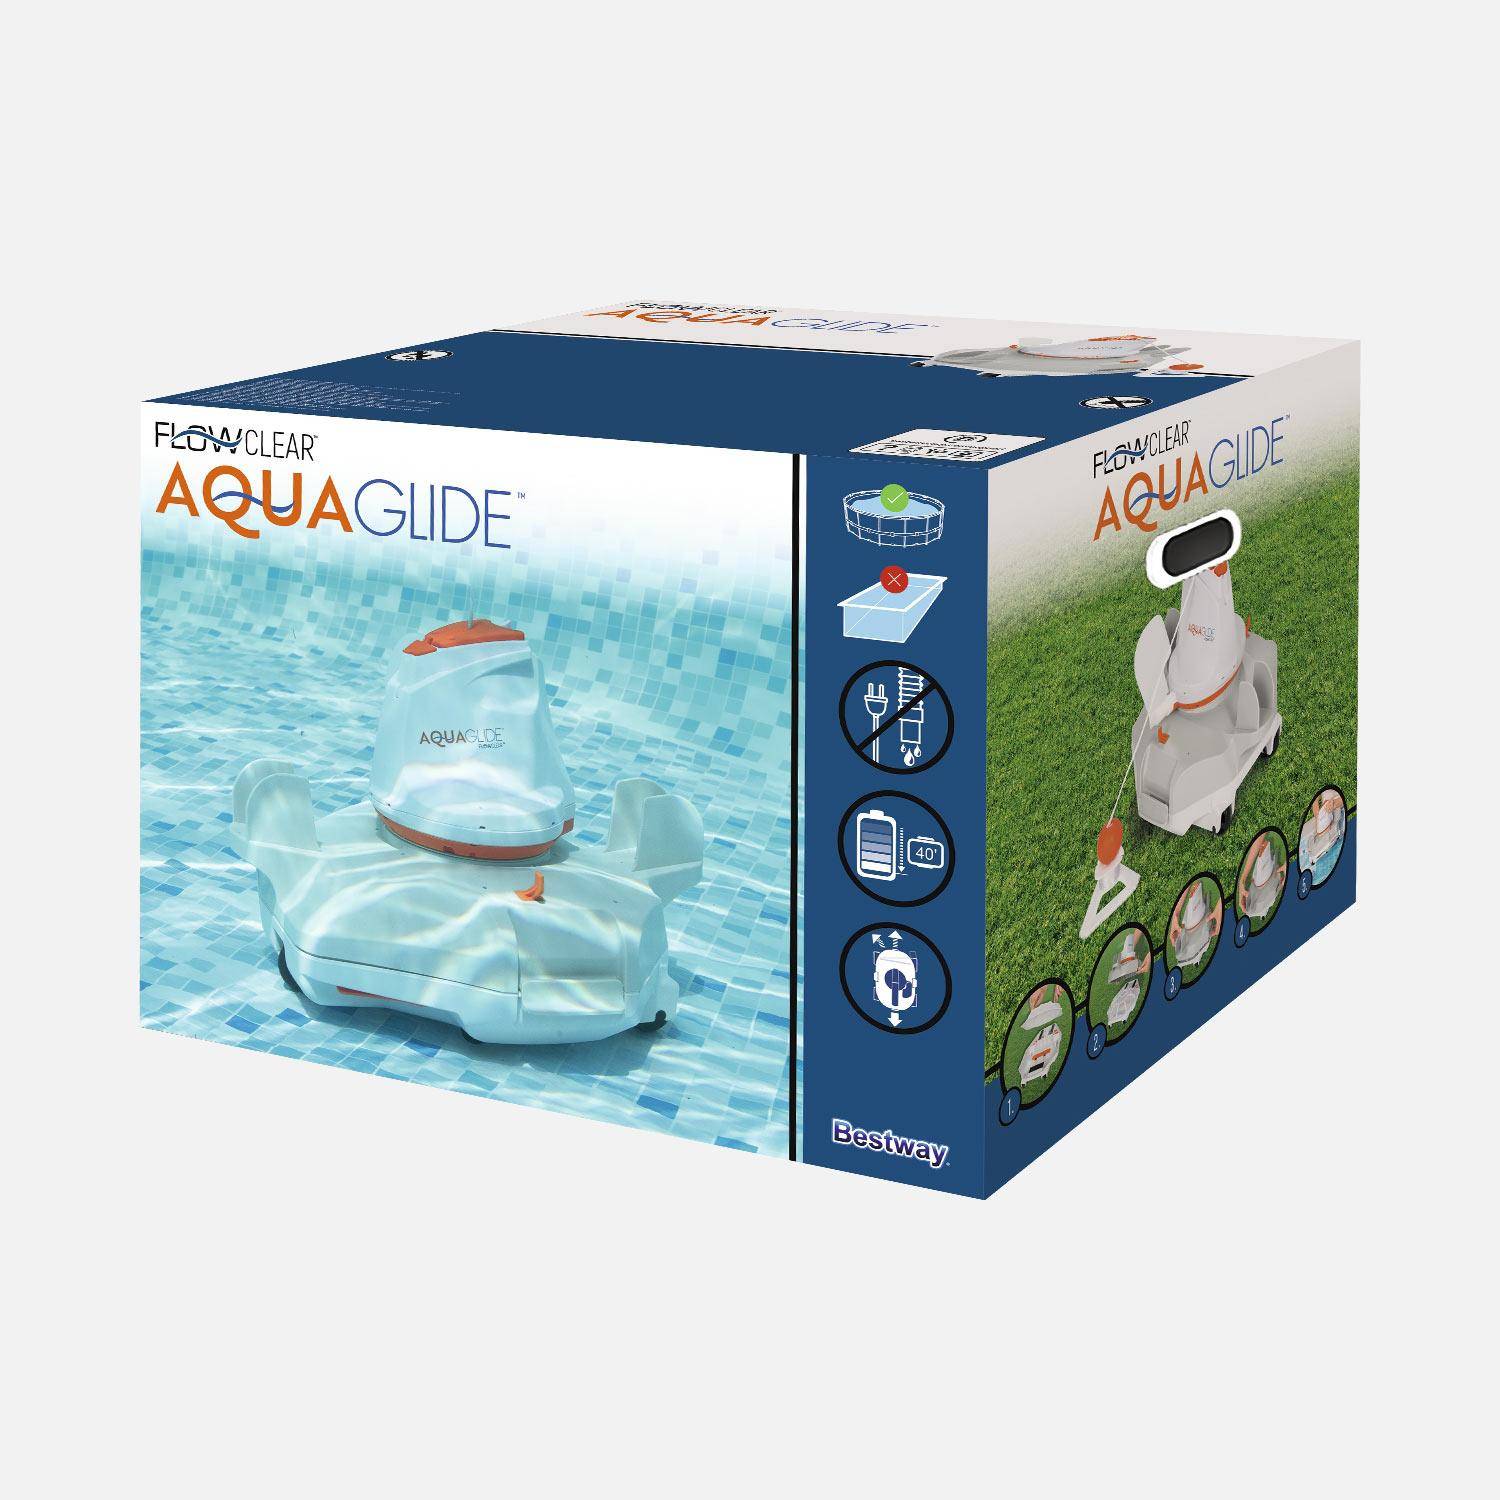 Robot aspirador Flowclear aquaglide para piscinas de fondo plano de hasta 20m². Photo6